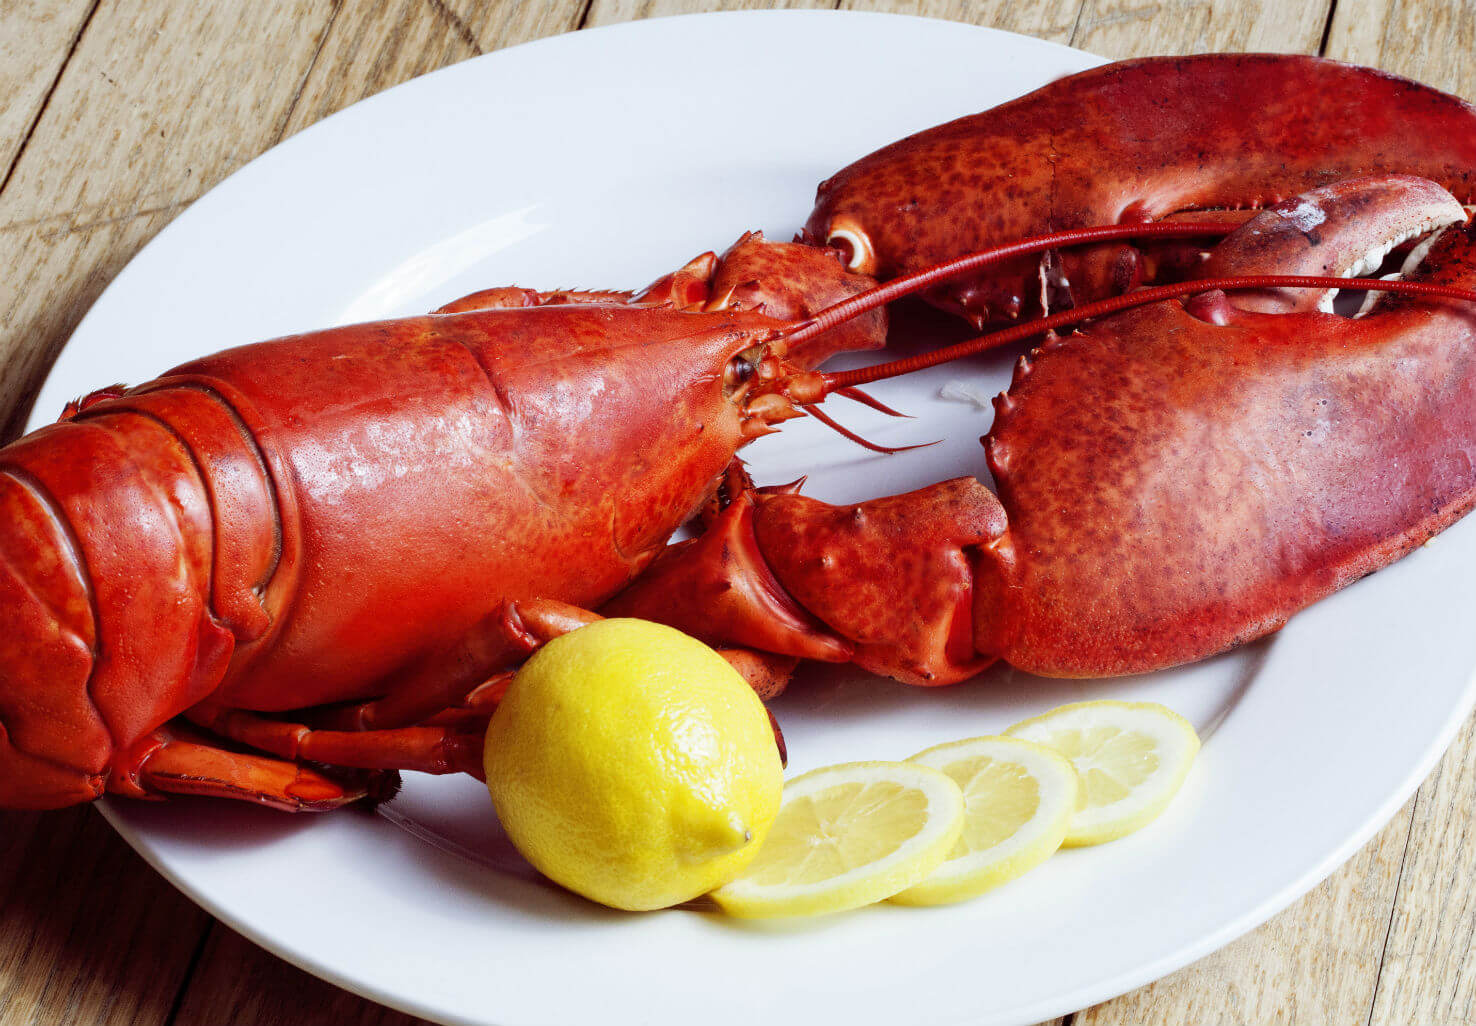 Lobster dinner with lemon